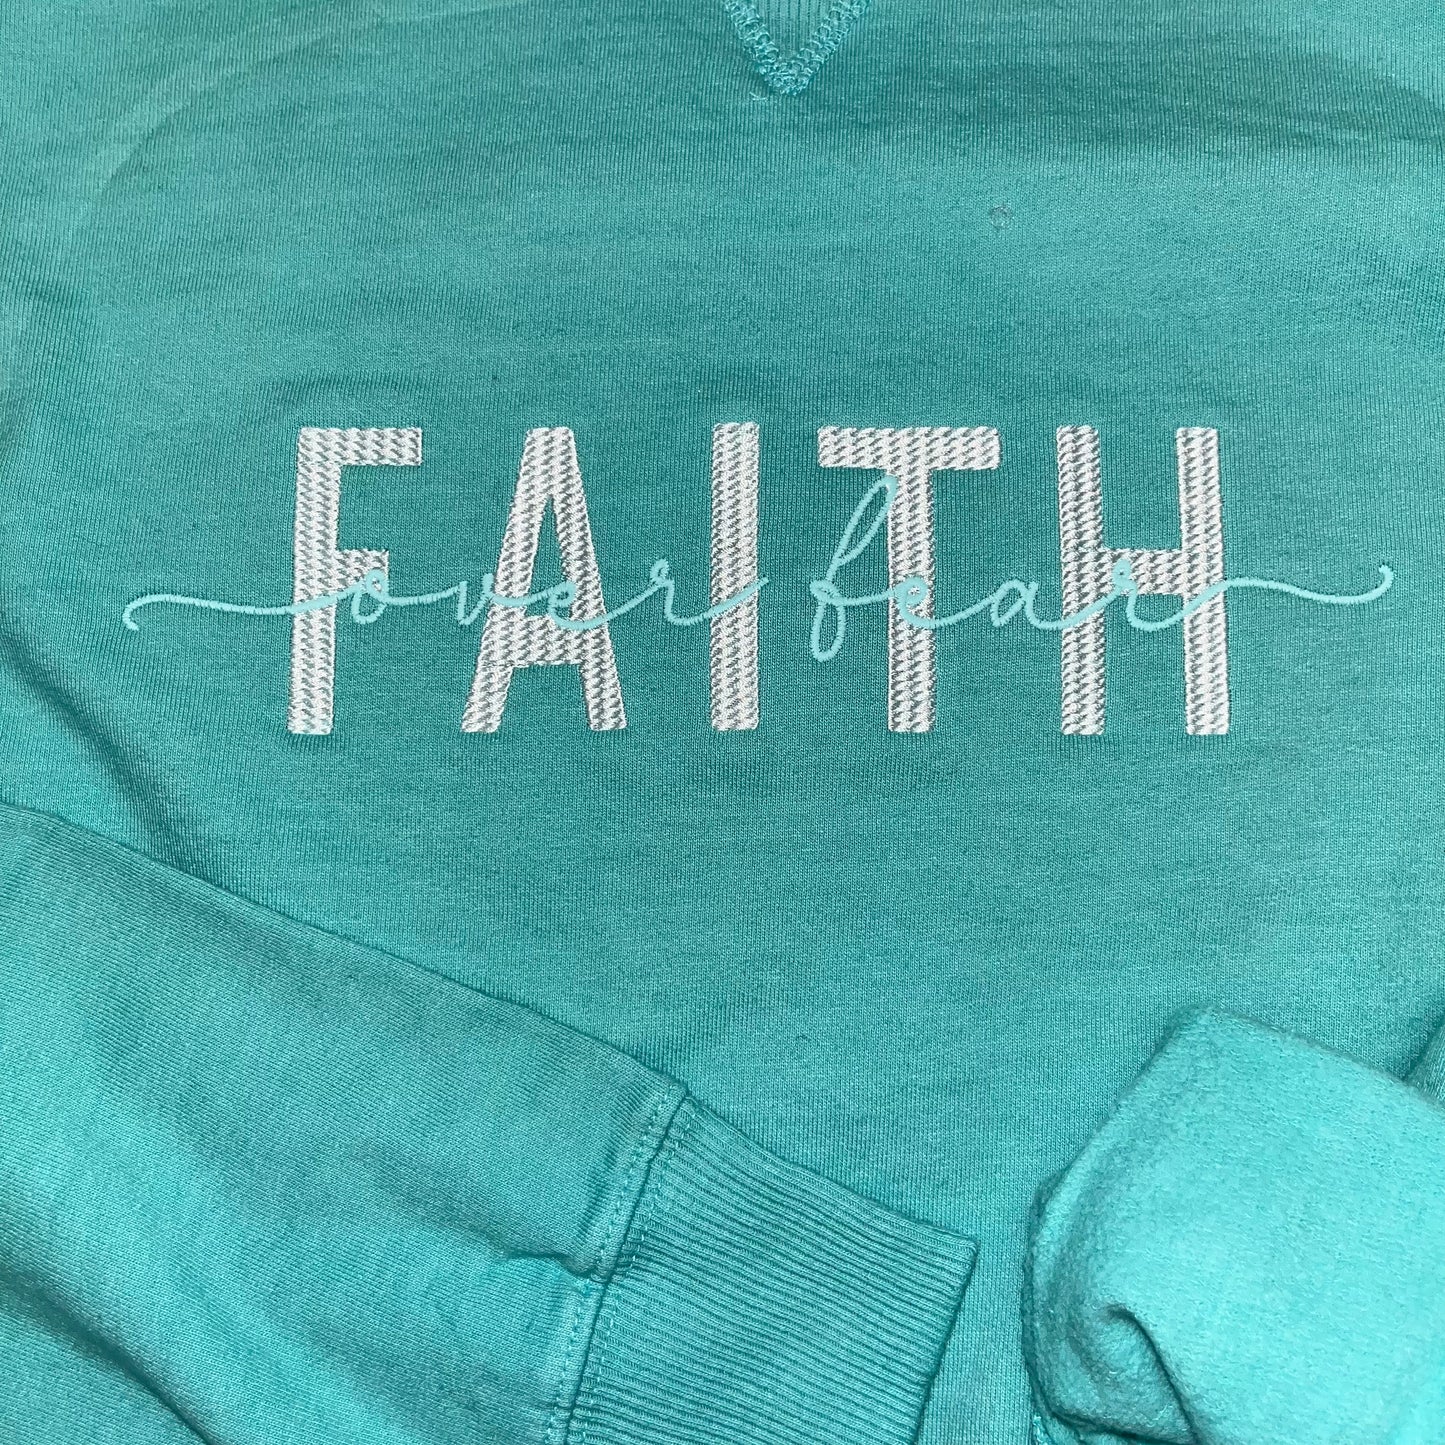 FAITH over fear Crewneck Sweatshirt